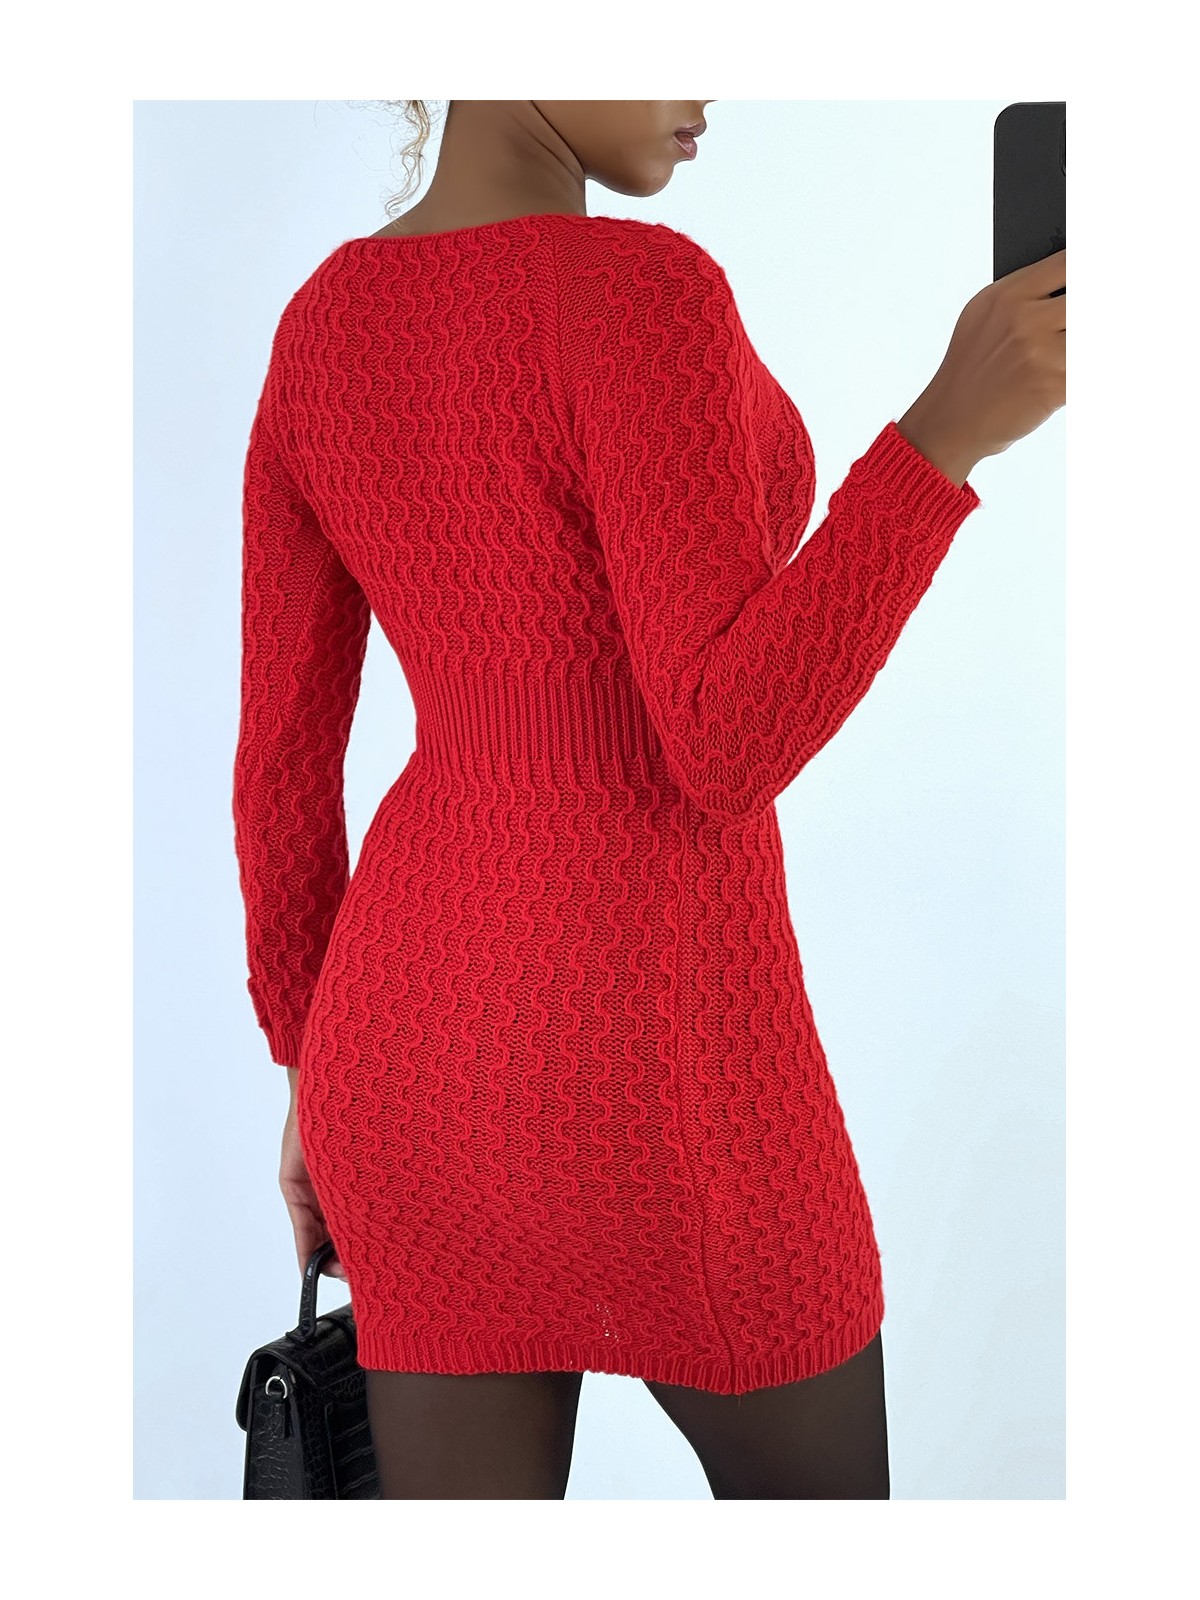 Magnifique robe pull rouge joliment tressé cintré à la taille - 4